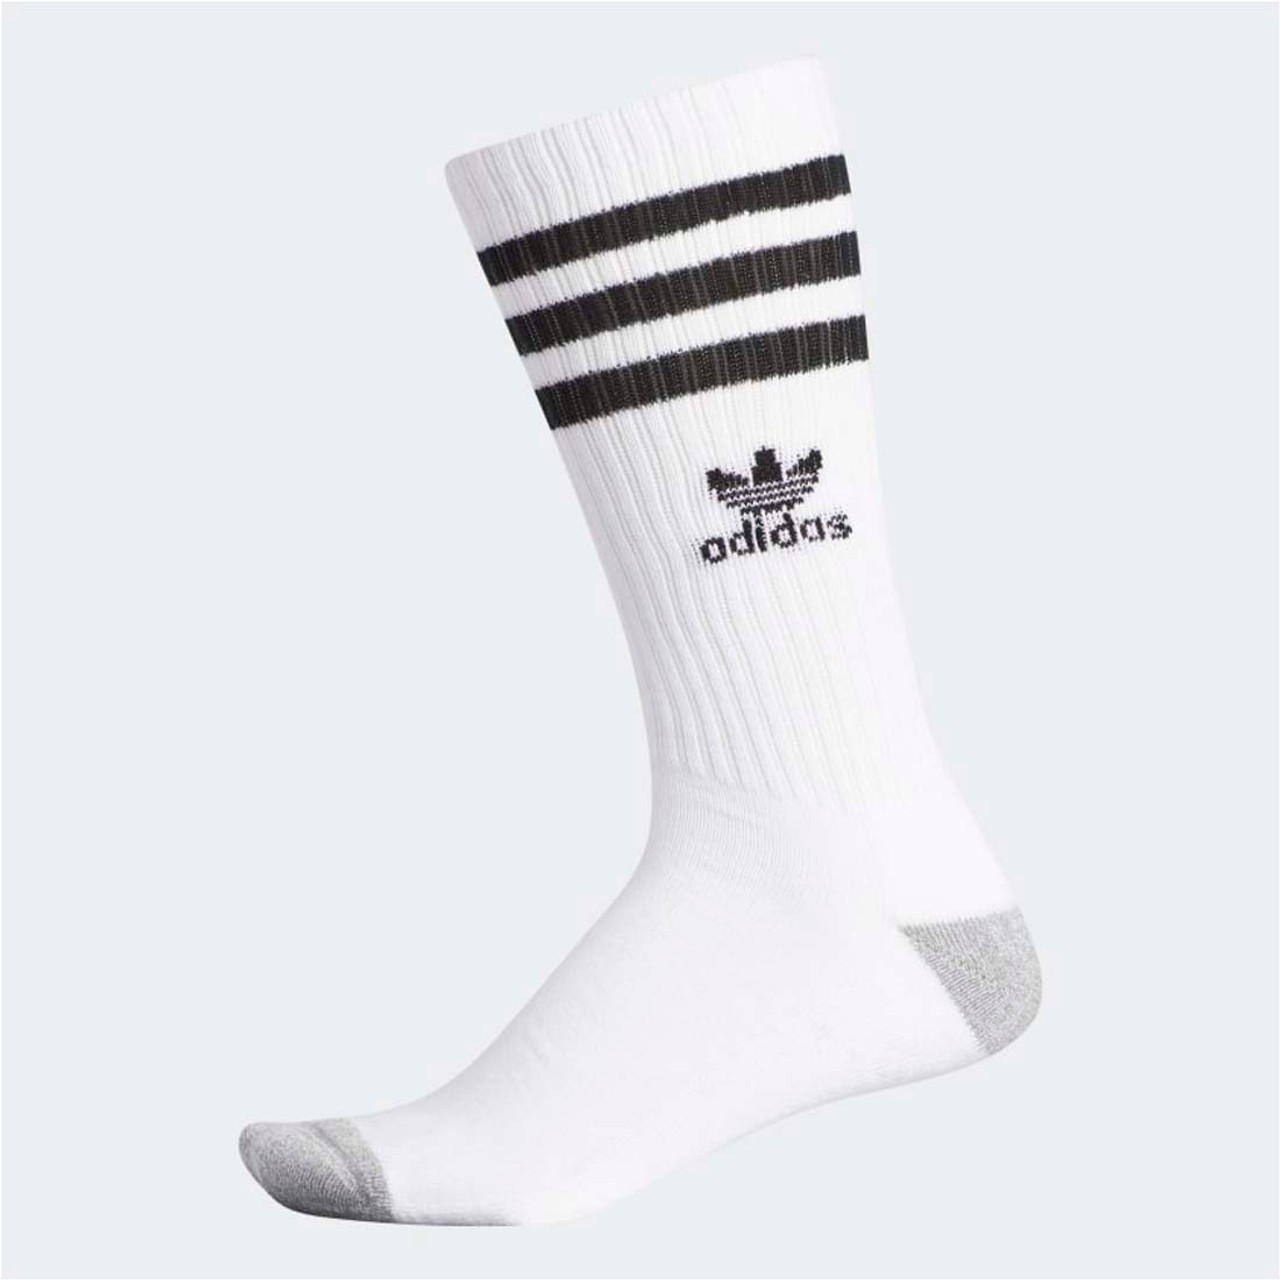 adidas men's white crew socks